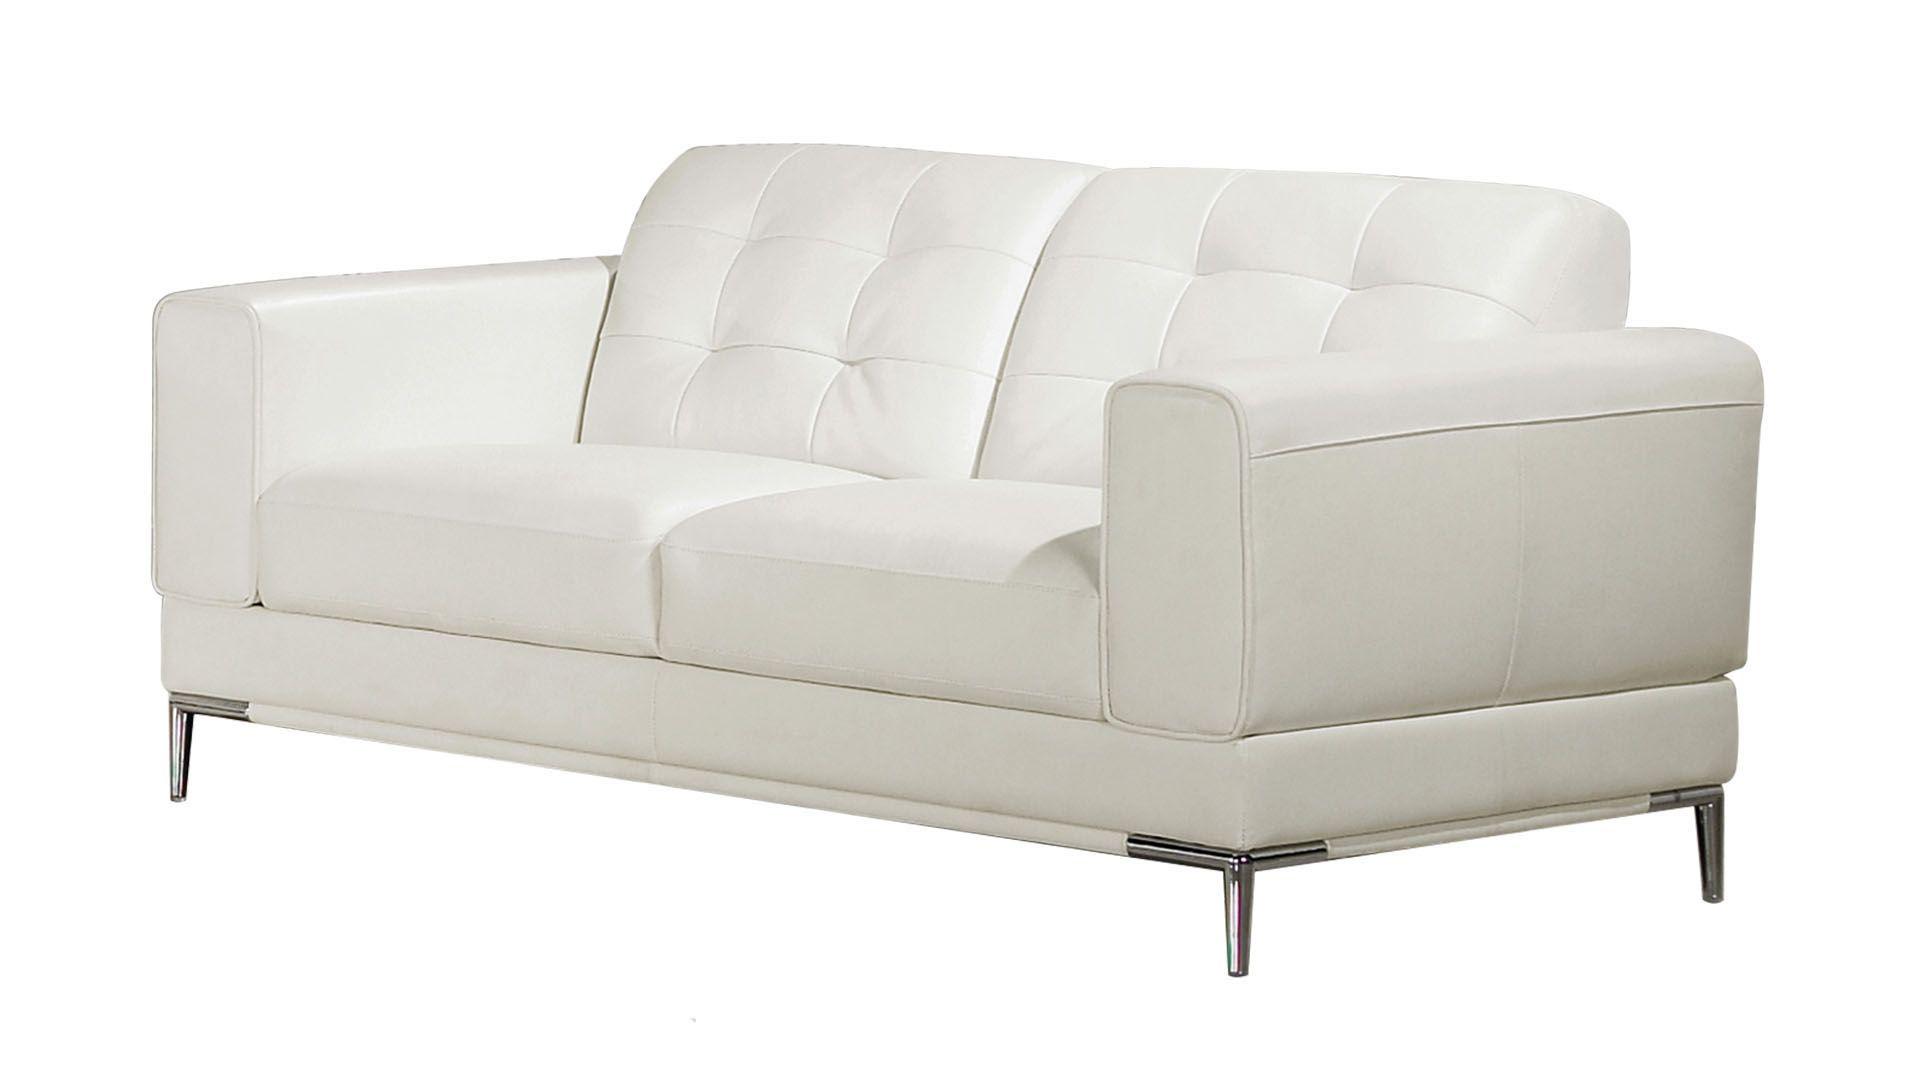 Contemporary, Modern Loveseat EK003-W-LS EK003-W-LS in White Italian Leather